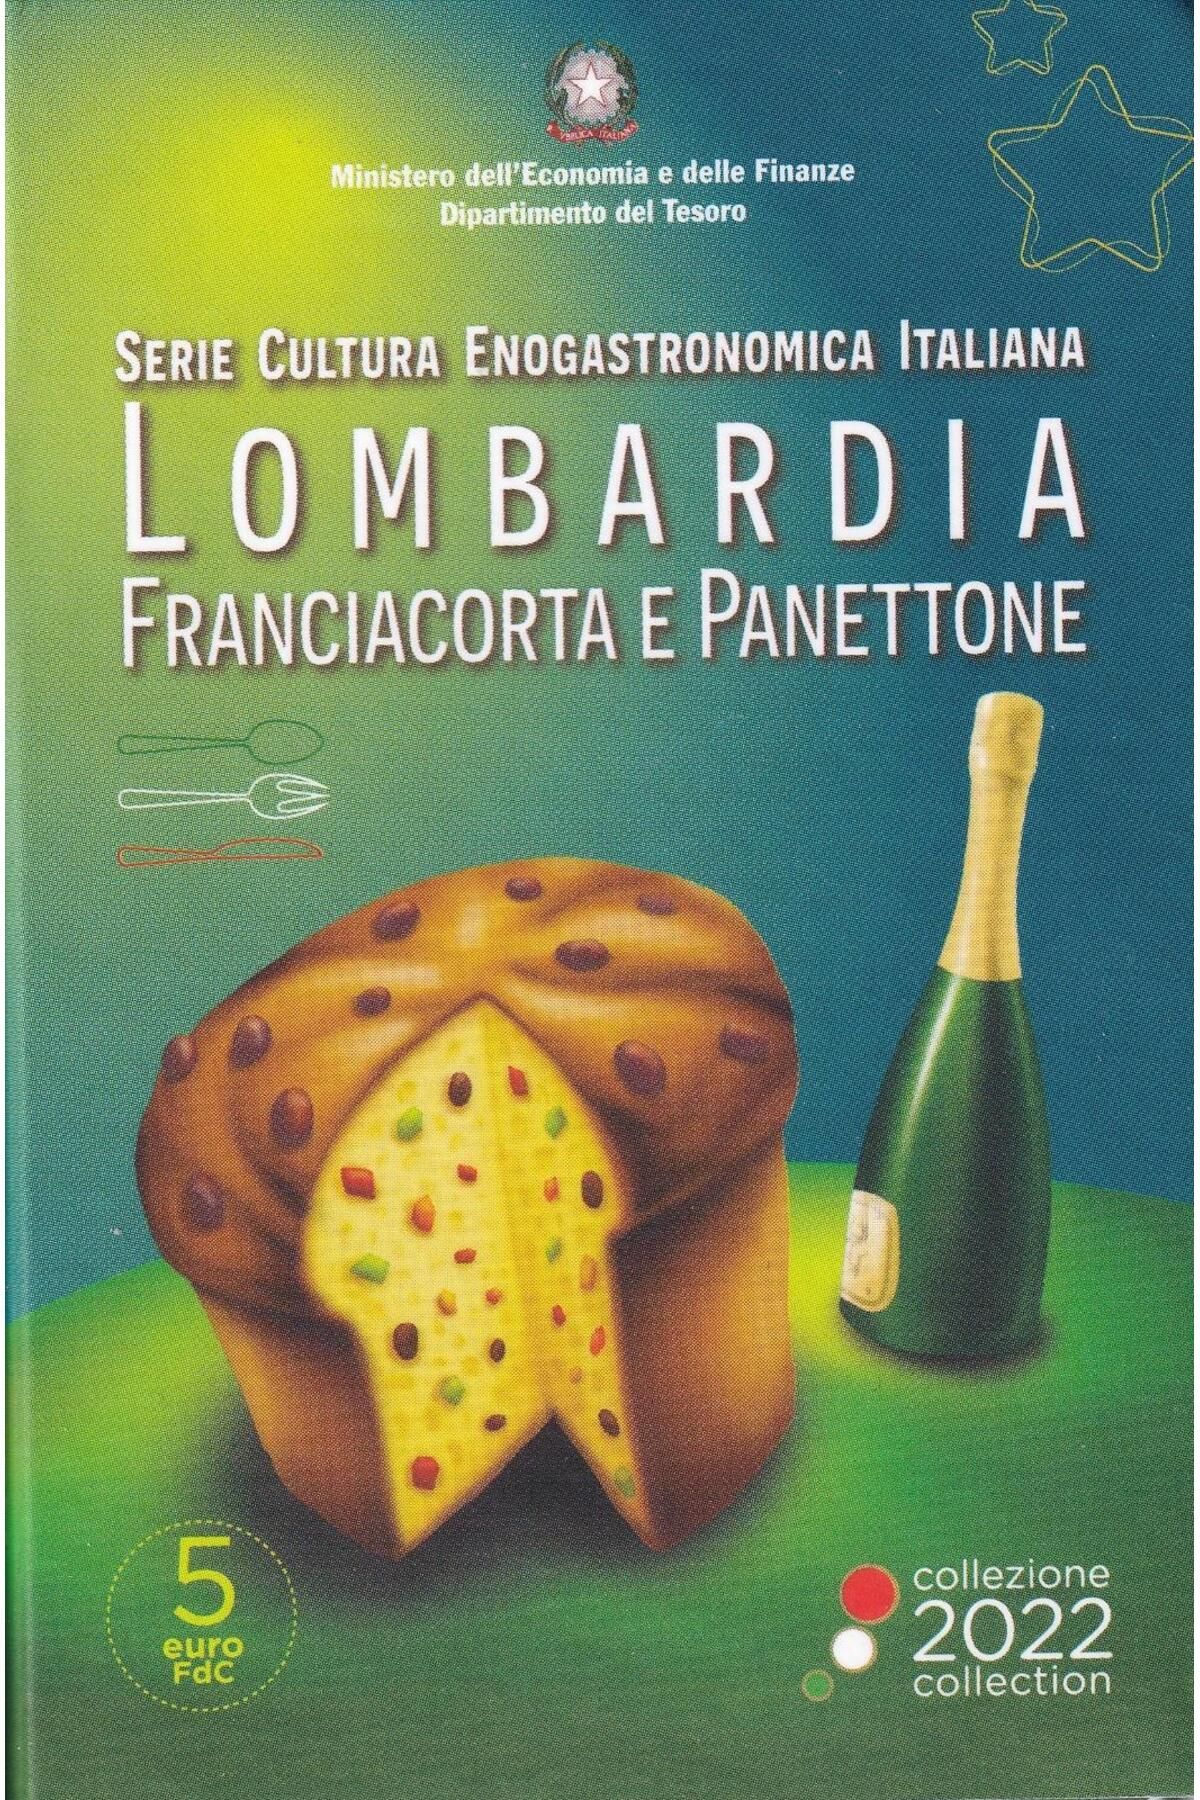 Benim Koleksiyonum İtalya 5 Avro, 2022 Yemek ve Şarap Kültürü - Franciacorta ve Panettone